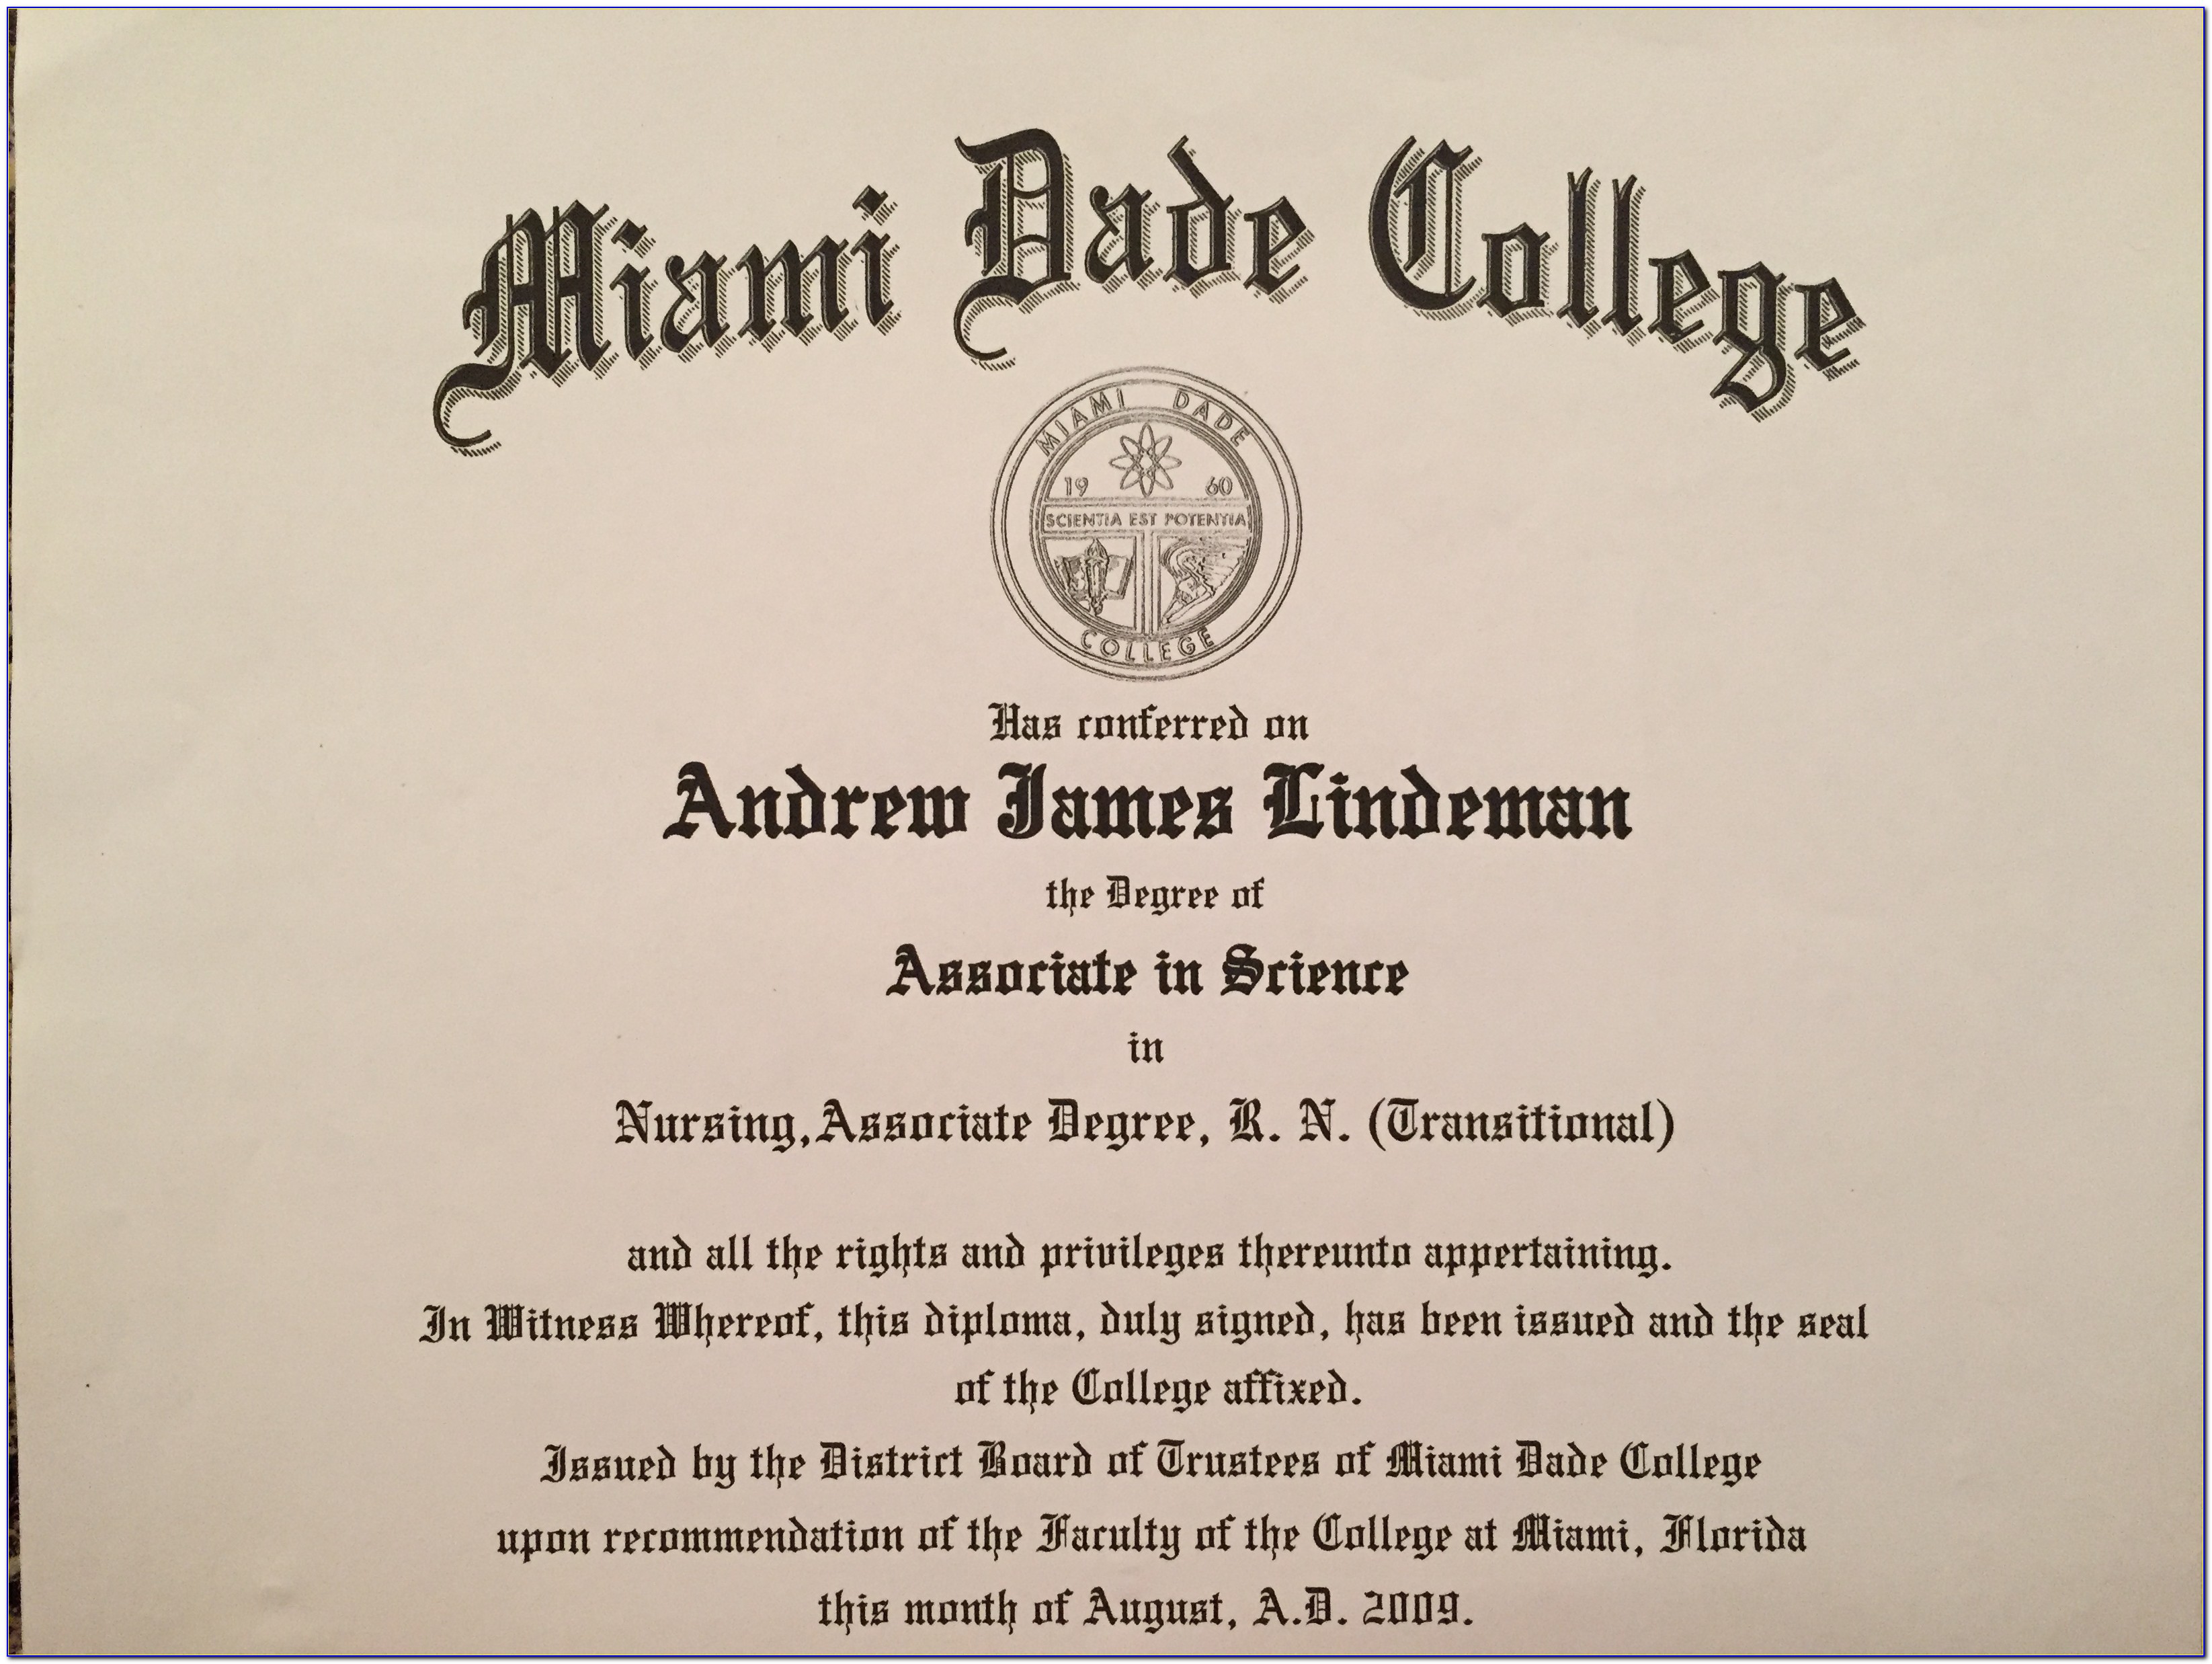 Miami Dade College Certificate Program